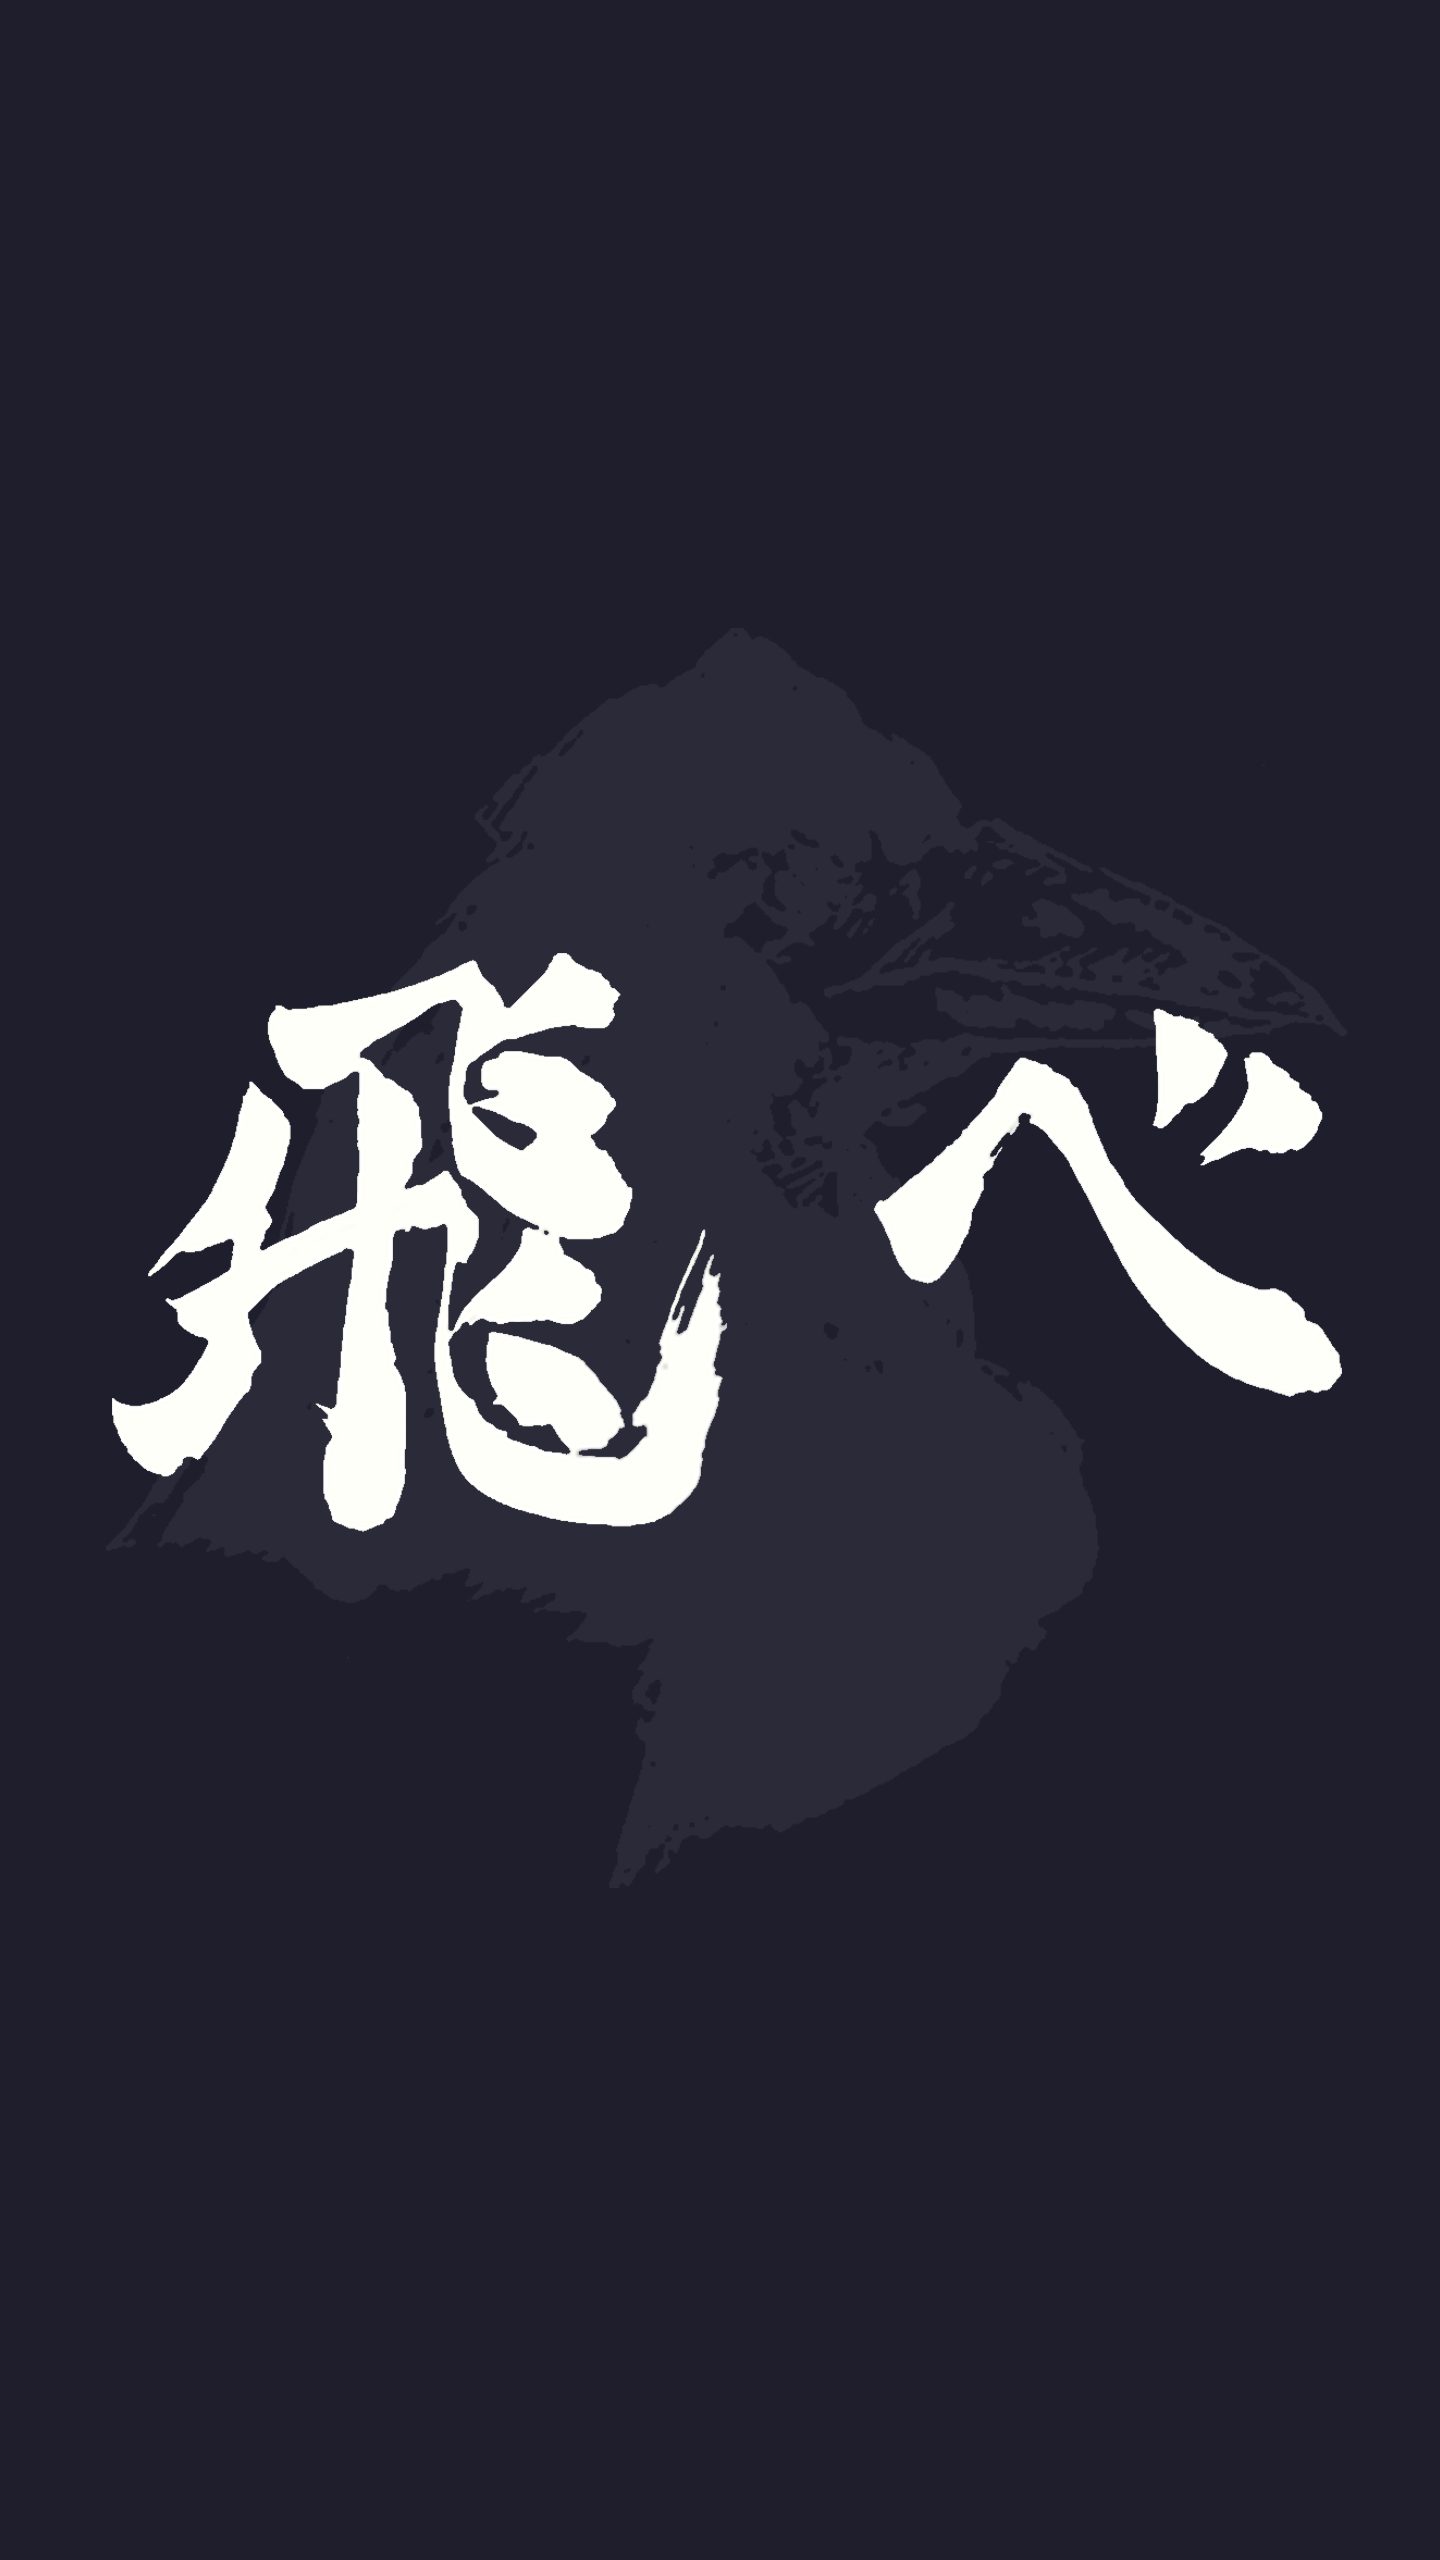 haikyuu karasuno logo